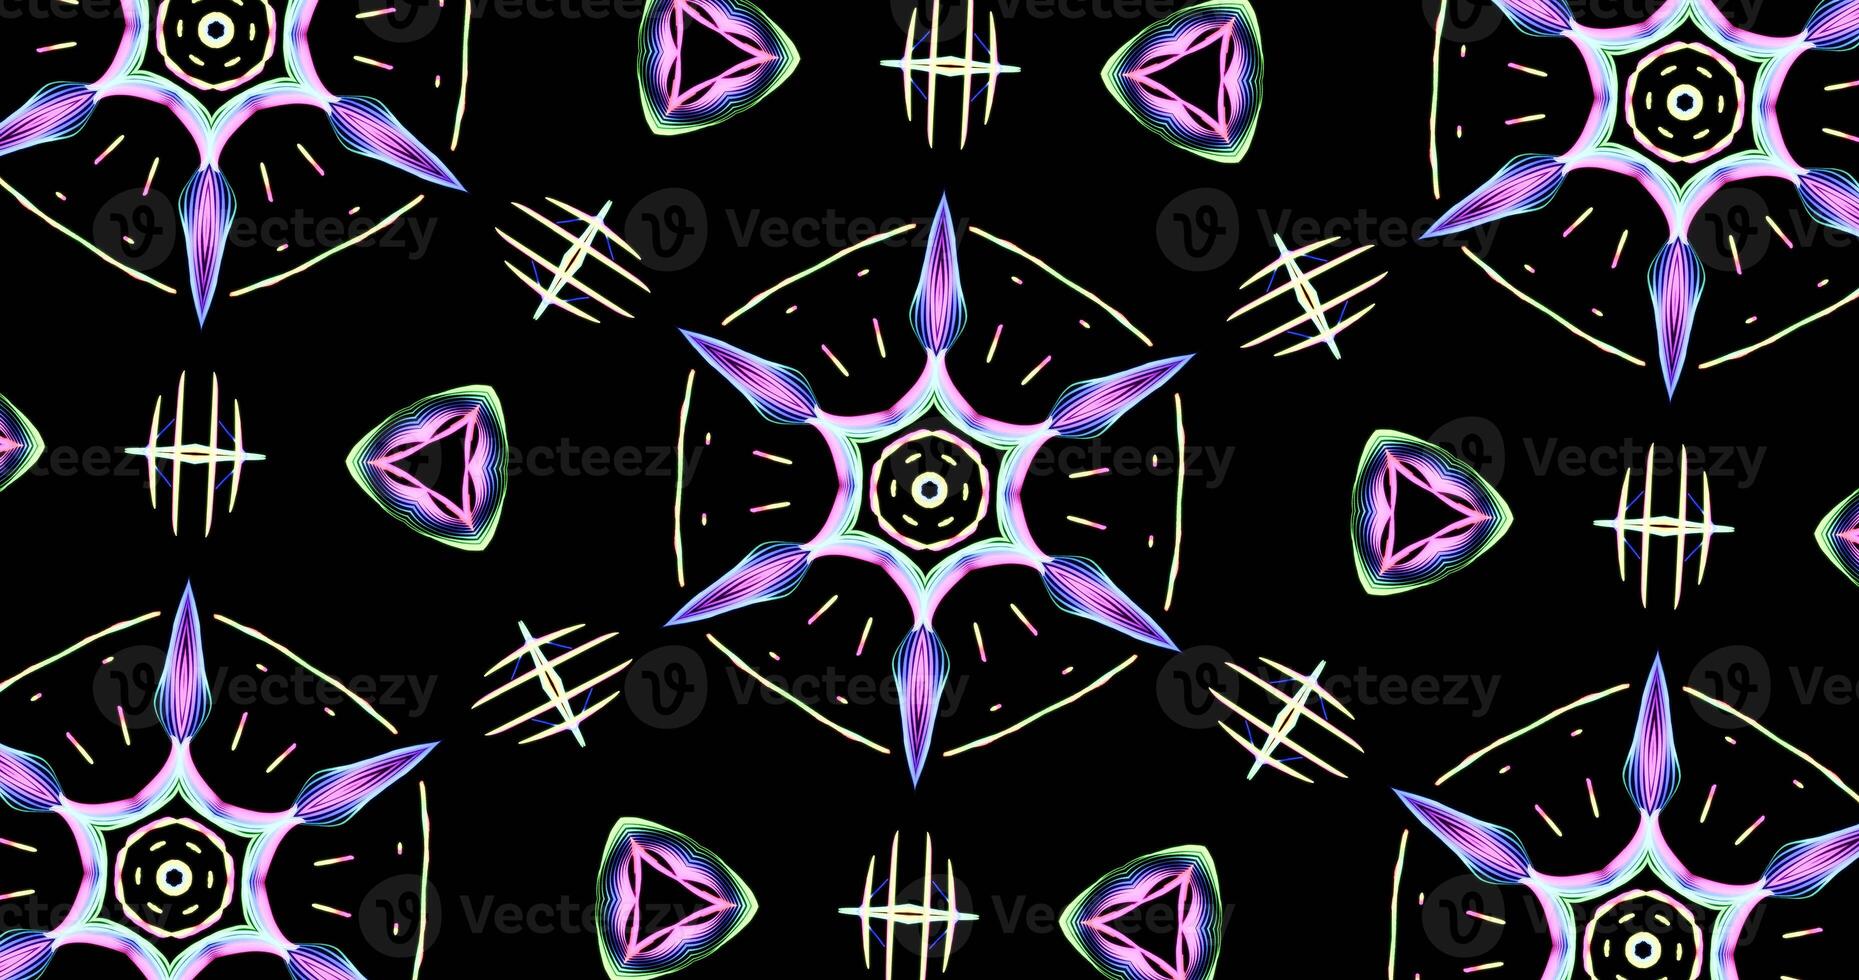 kaleidoskopisch Muster auf dunkel Hintergrund im beschwingt Farben foto